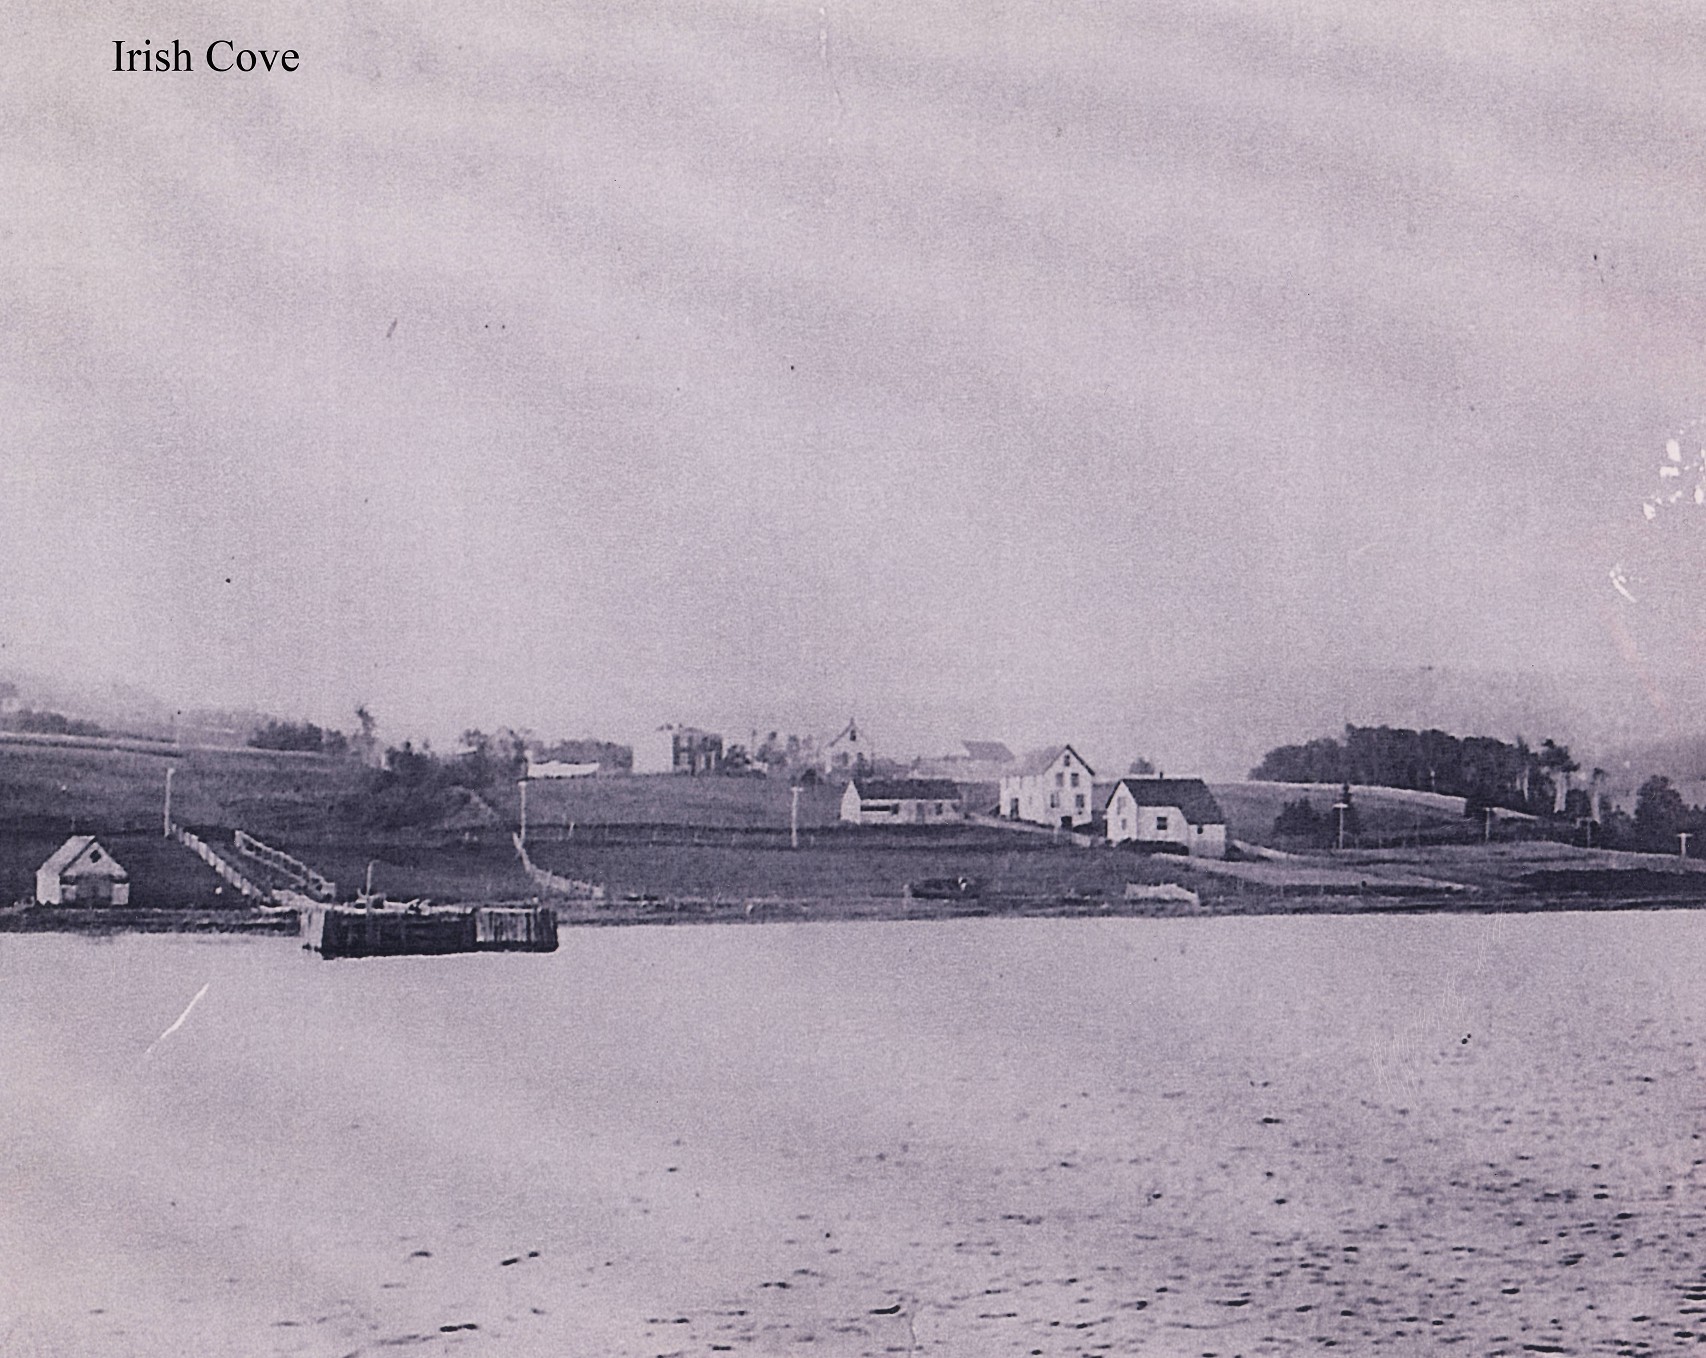 Irish Cove